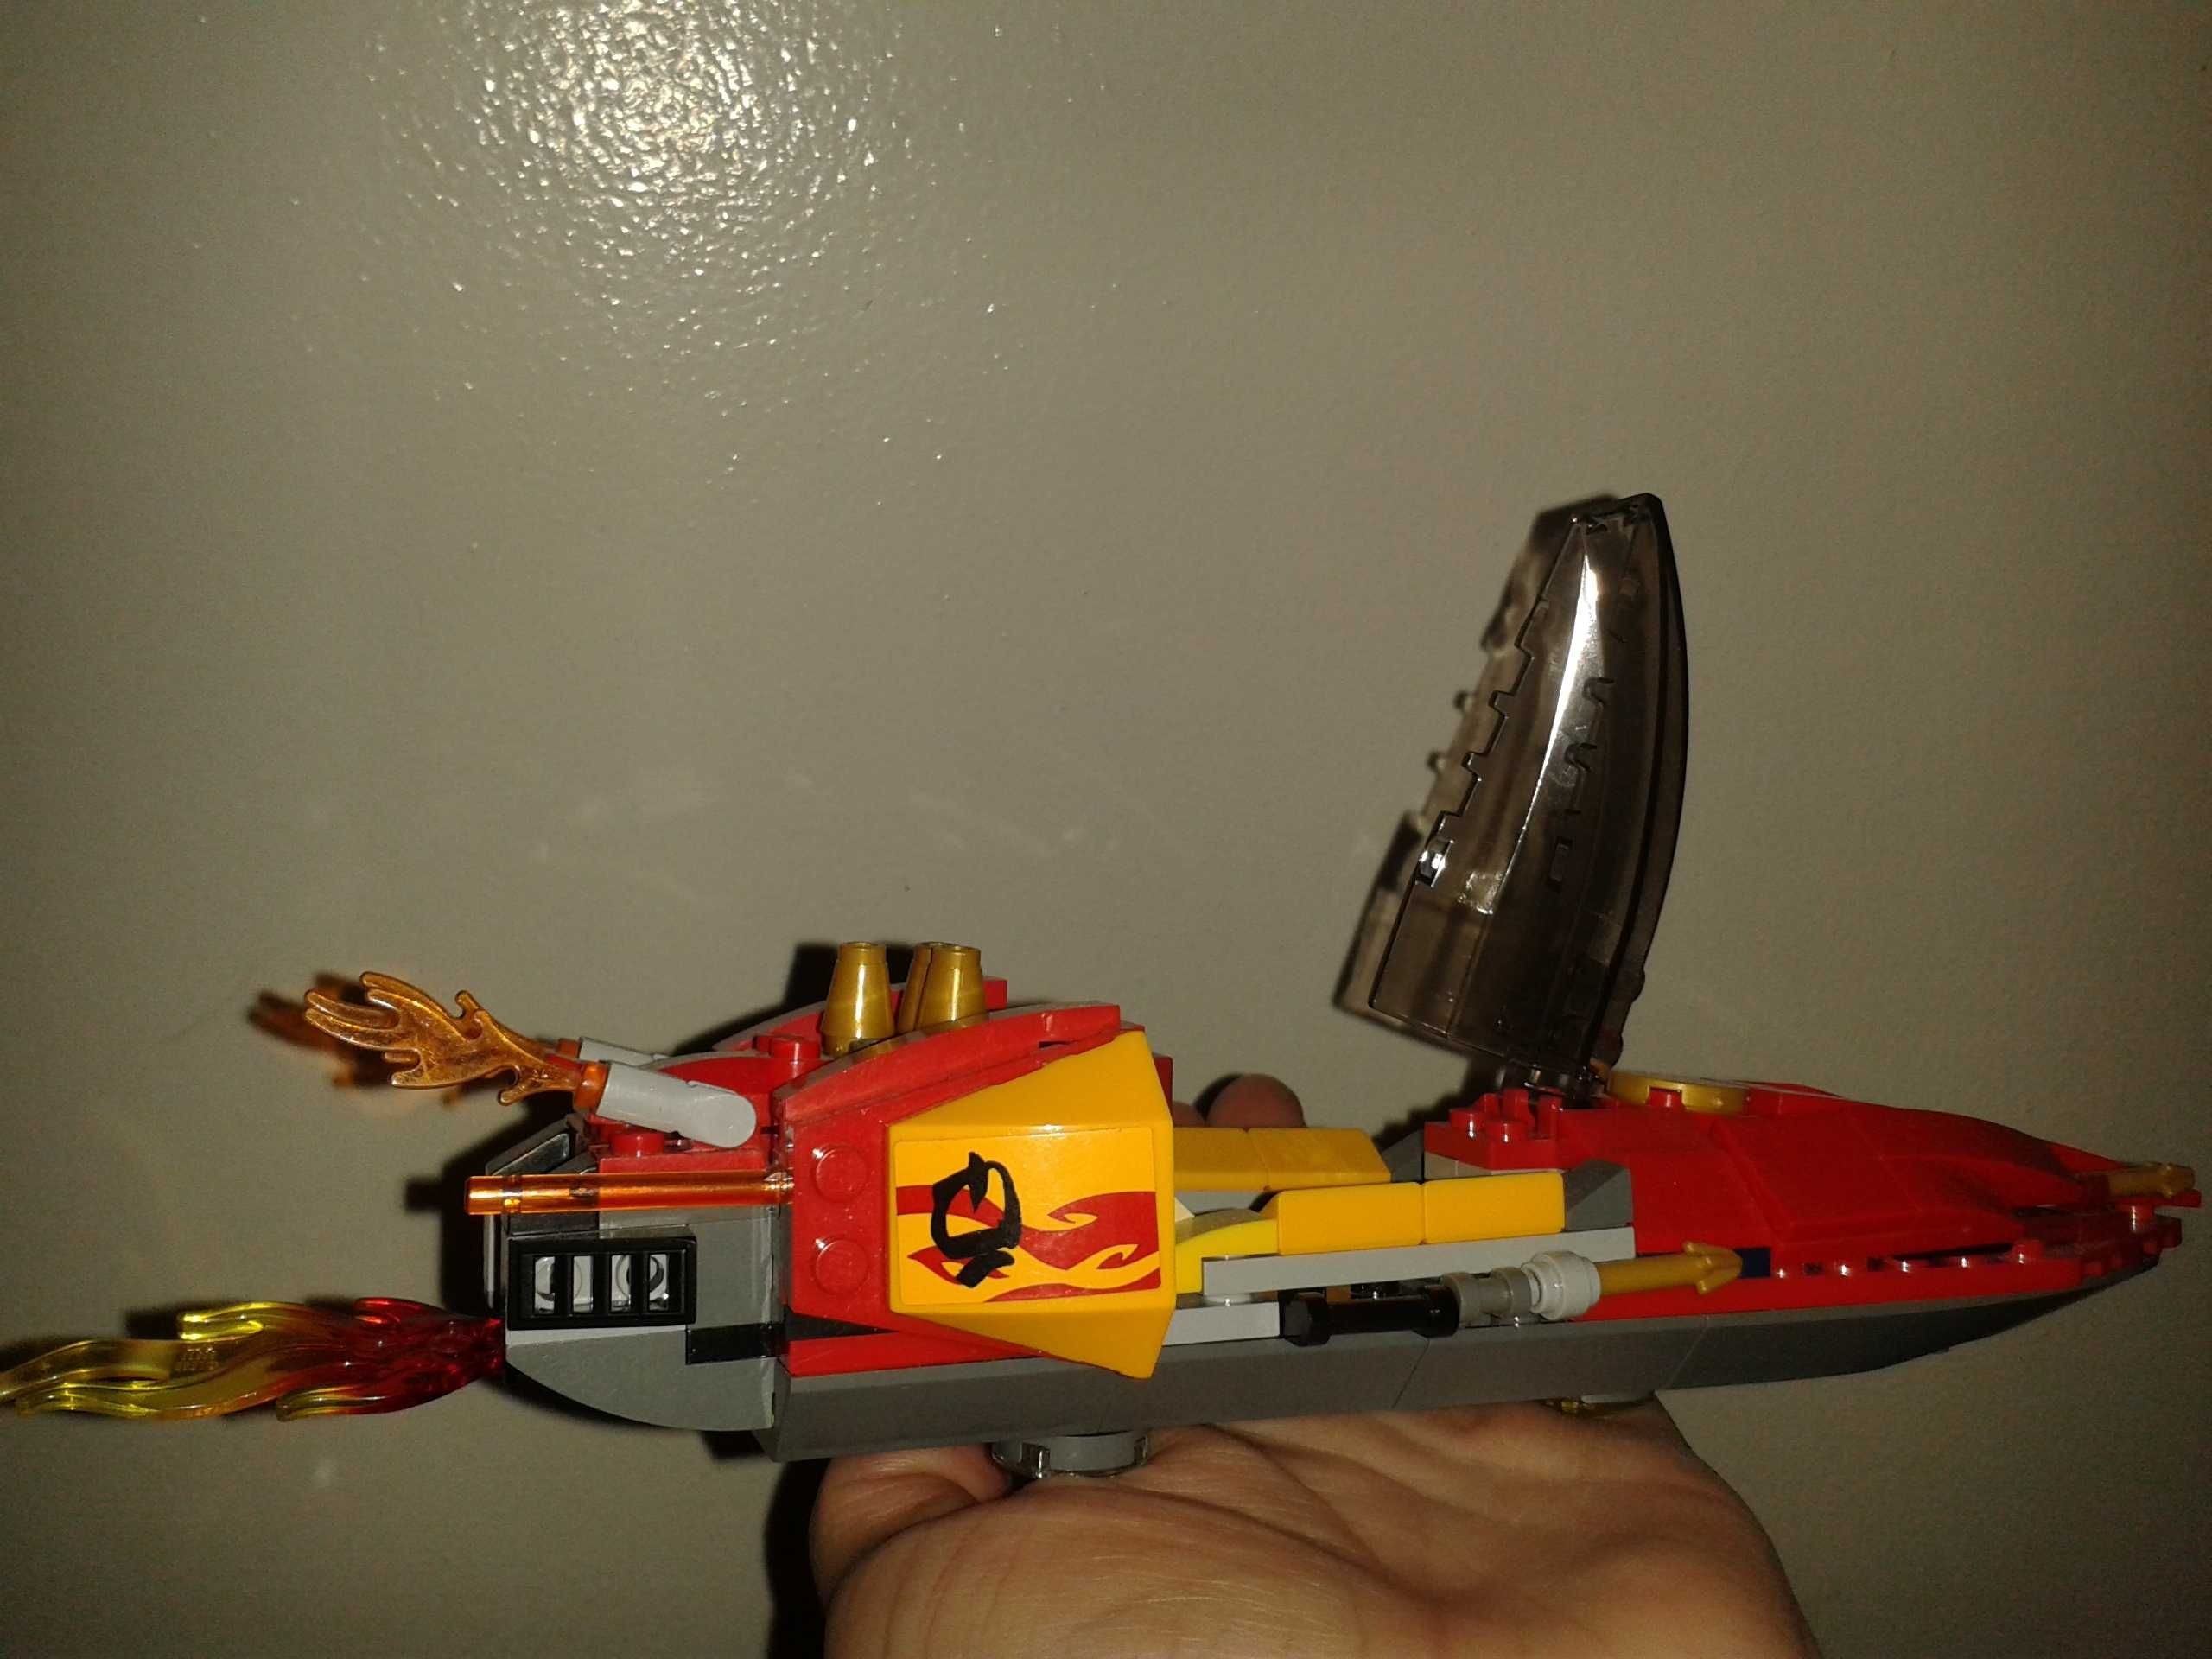 Klocki LEGO NINJAGO 70638 łódź wyścigowa i bojowa duża !!!